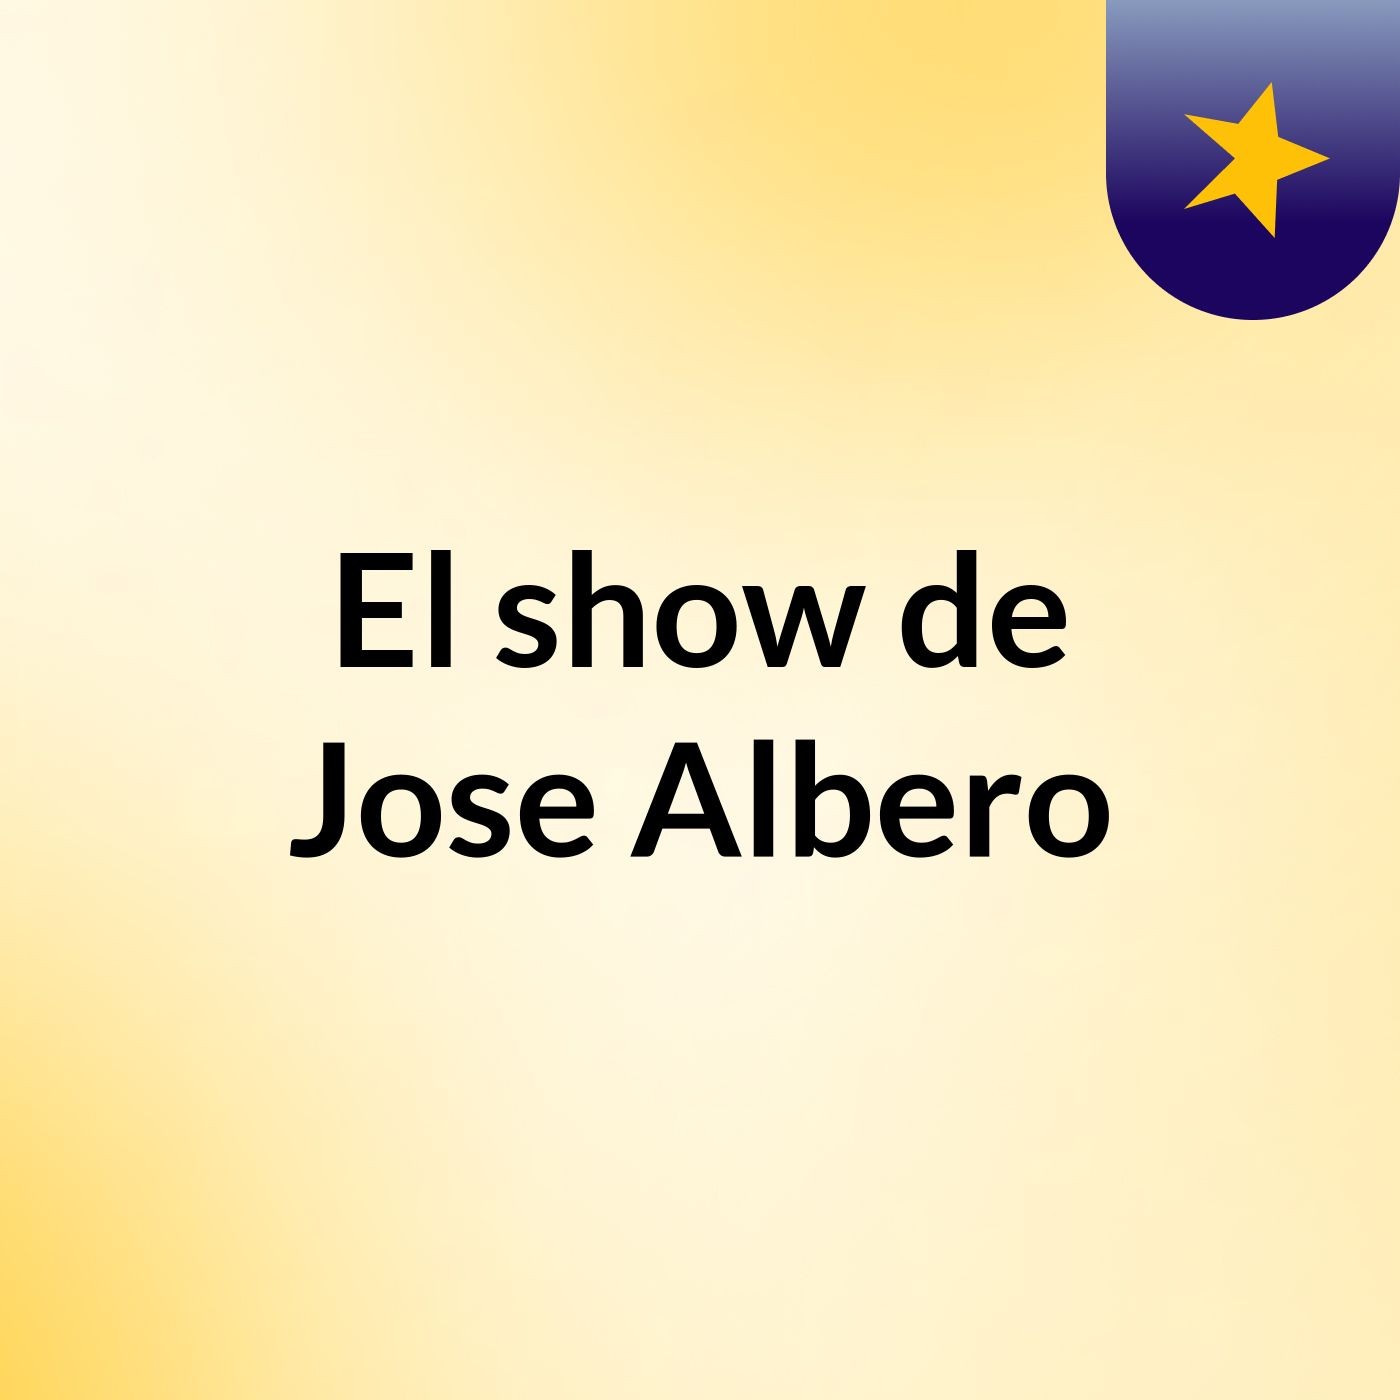 El show de Jose Albero